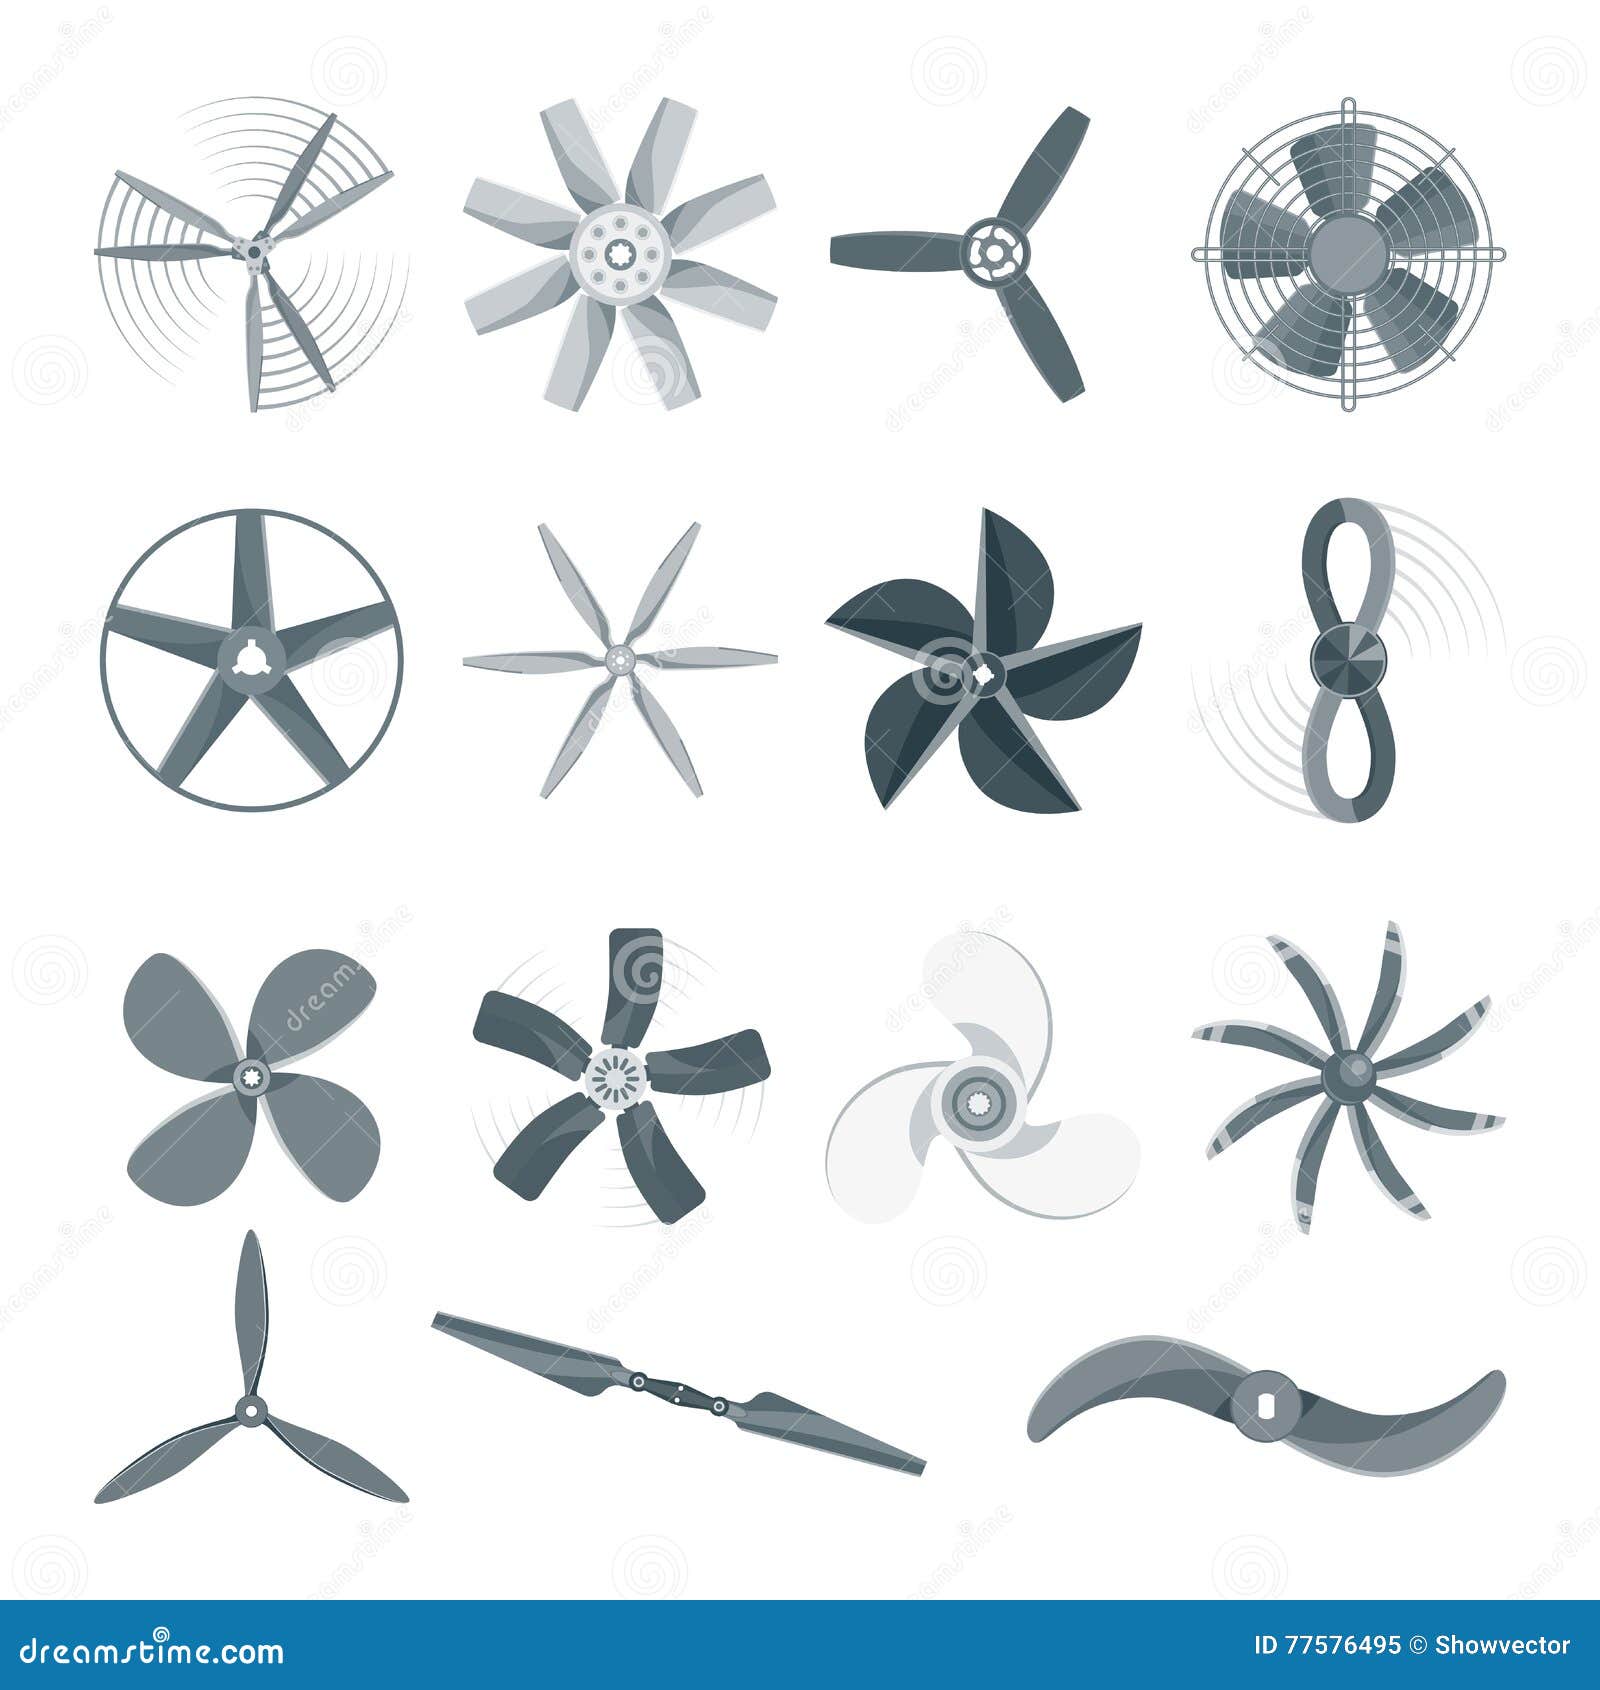 Propeller Fan Vector Illustration. Stock Vector - Illustration of rotor ...